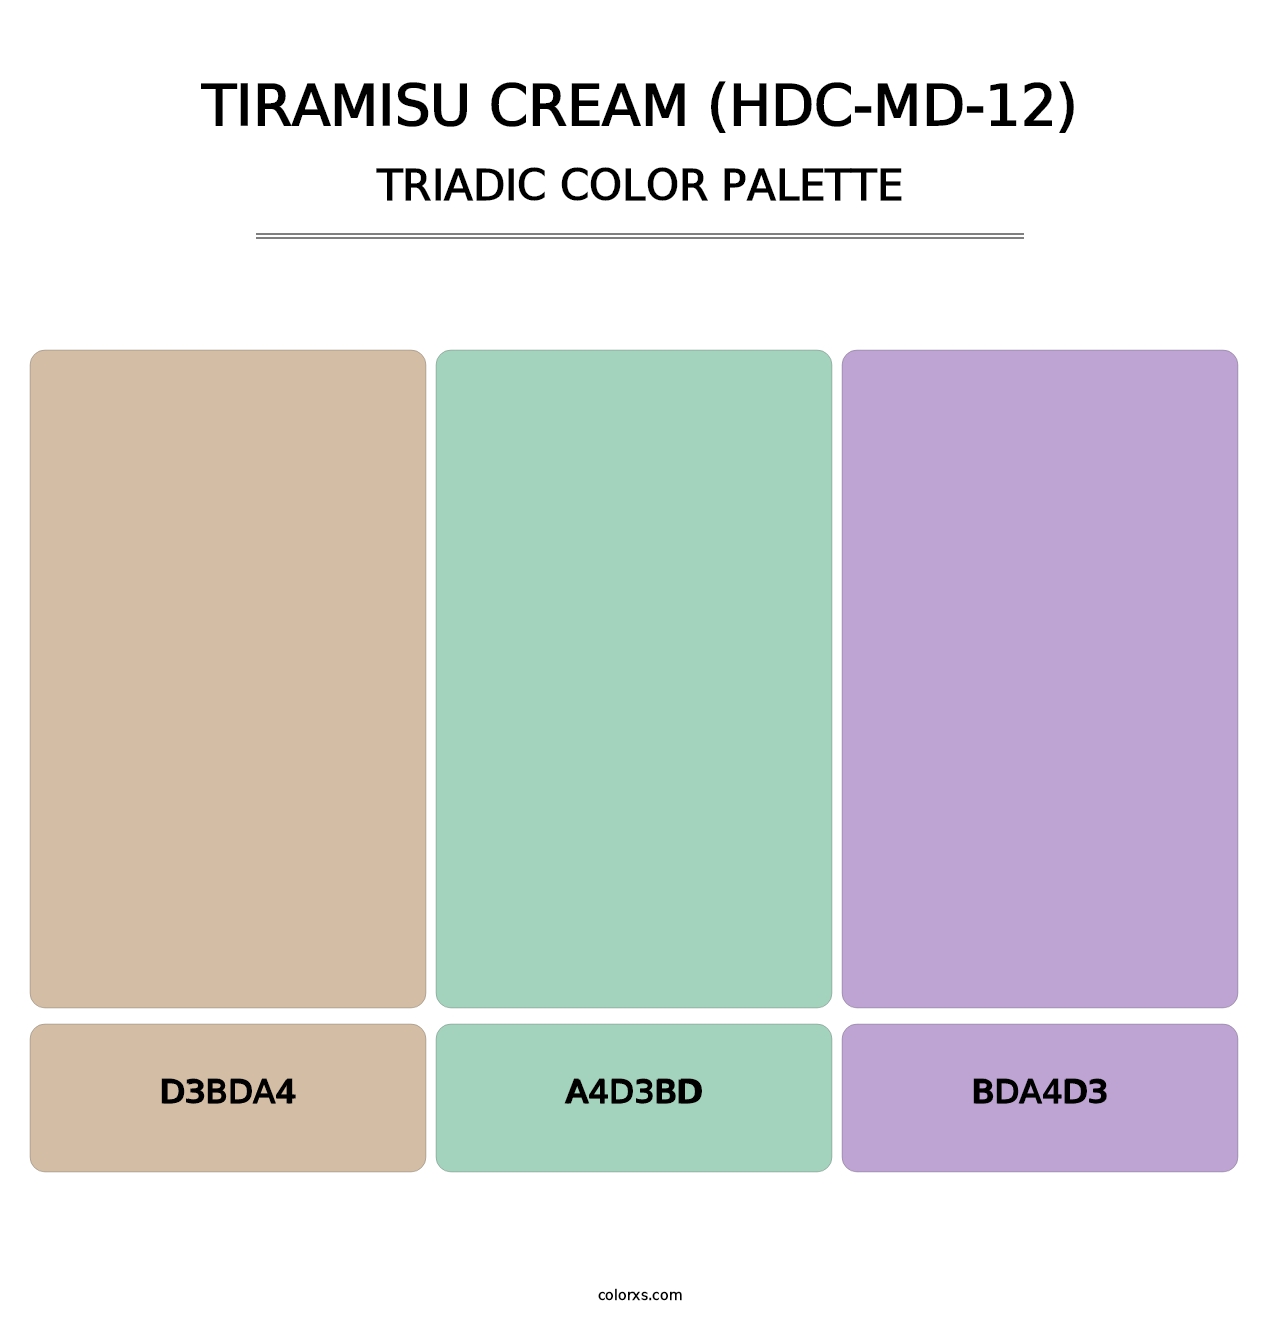 Tiramisu Cream (HDC-MD-12) - Triadic Color Palette